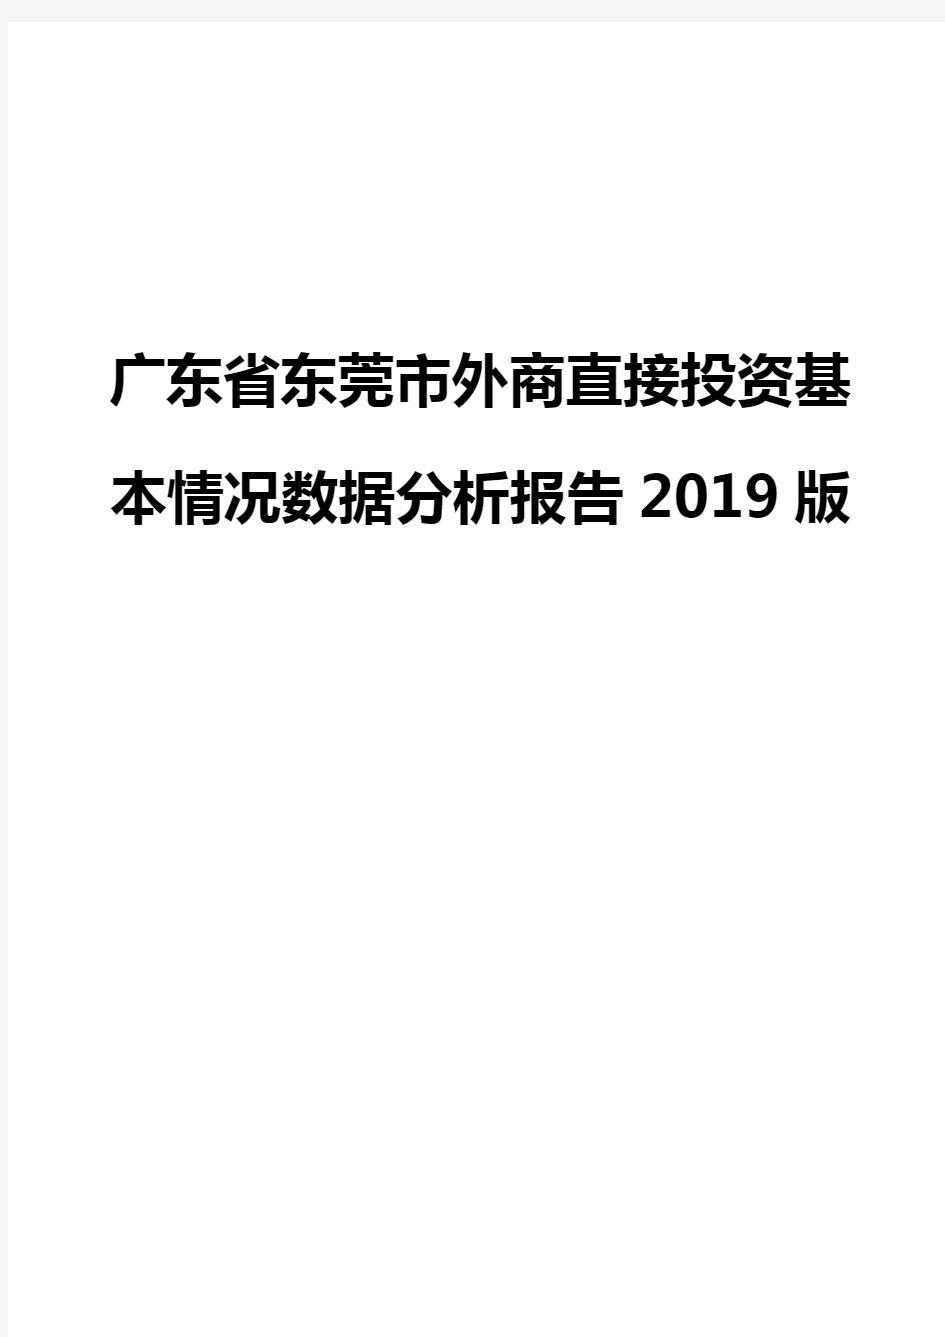 广东省东莞市外商直接投资基本情况数据分析报告2019版